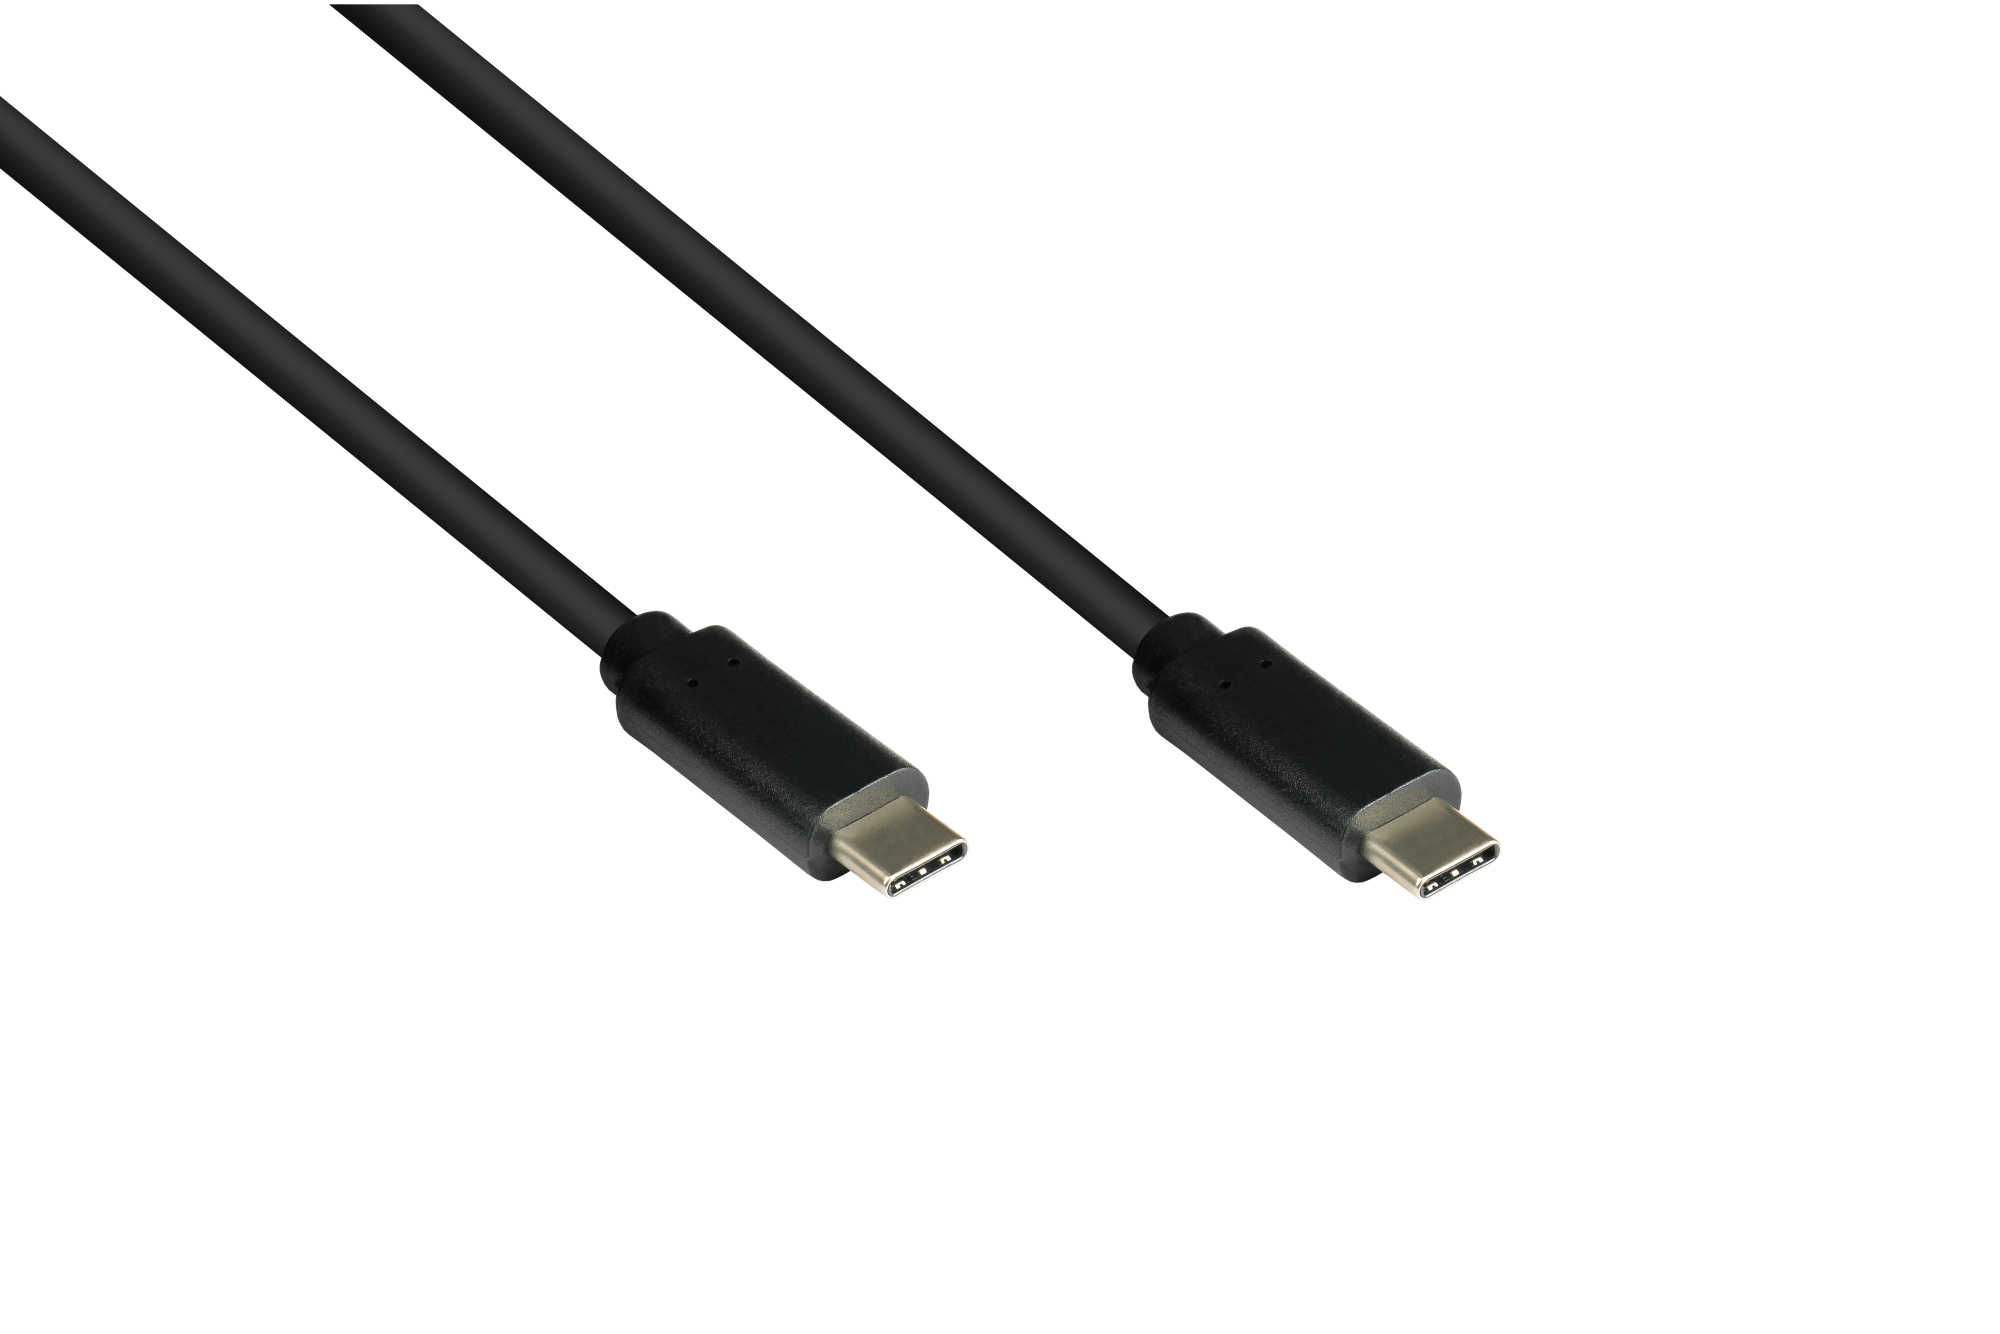 Lade- und Datenkabel USB 3.1 (Gen.1), USB-C™ Stecker beidseitig, CU, schwarz, 1,5m